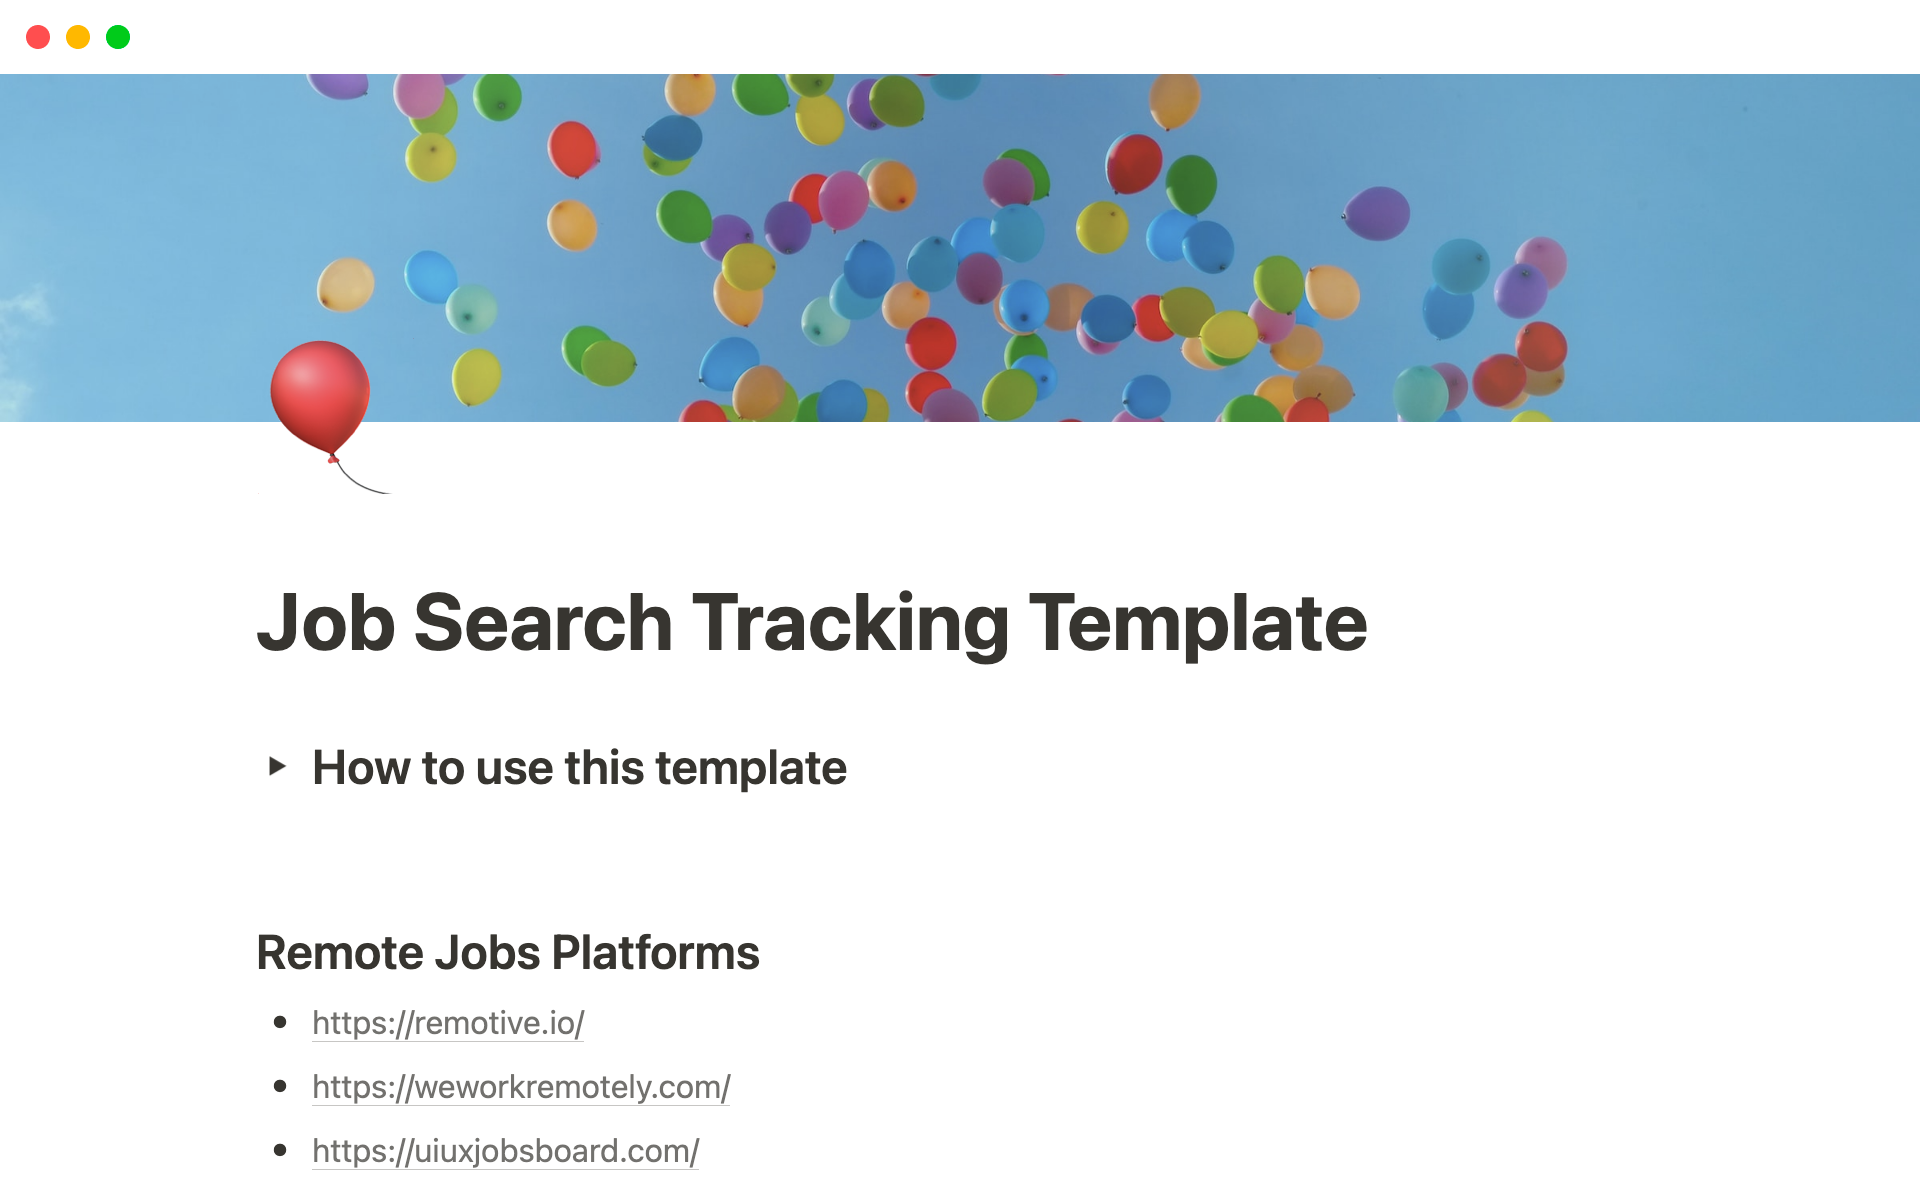 Uma prévia do modelo para Job Search Tracking Template